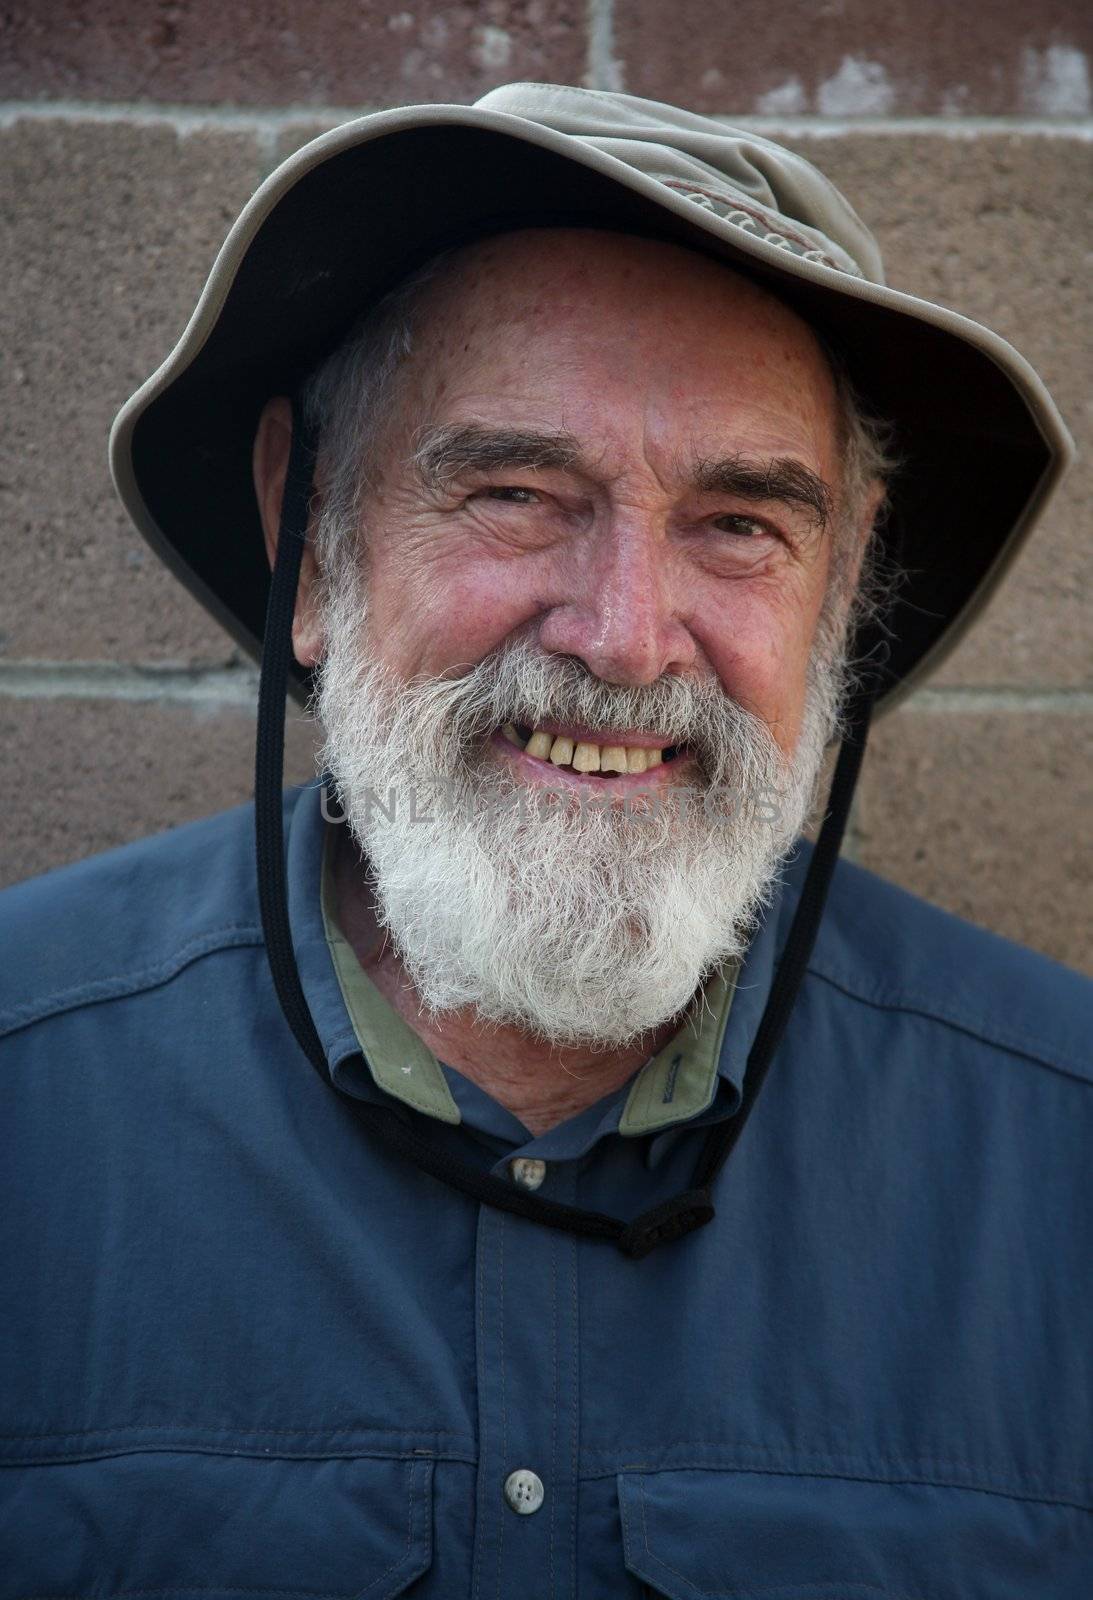 Elderly man wearing a hat